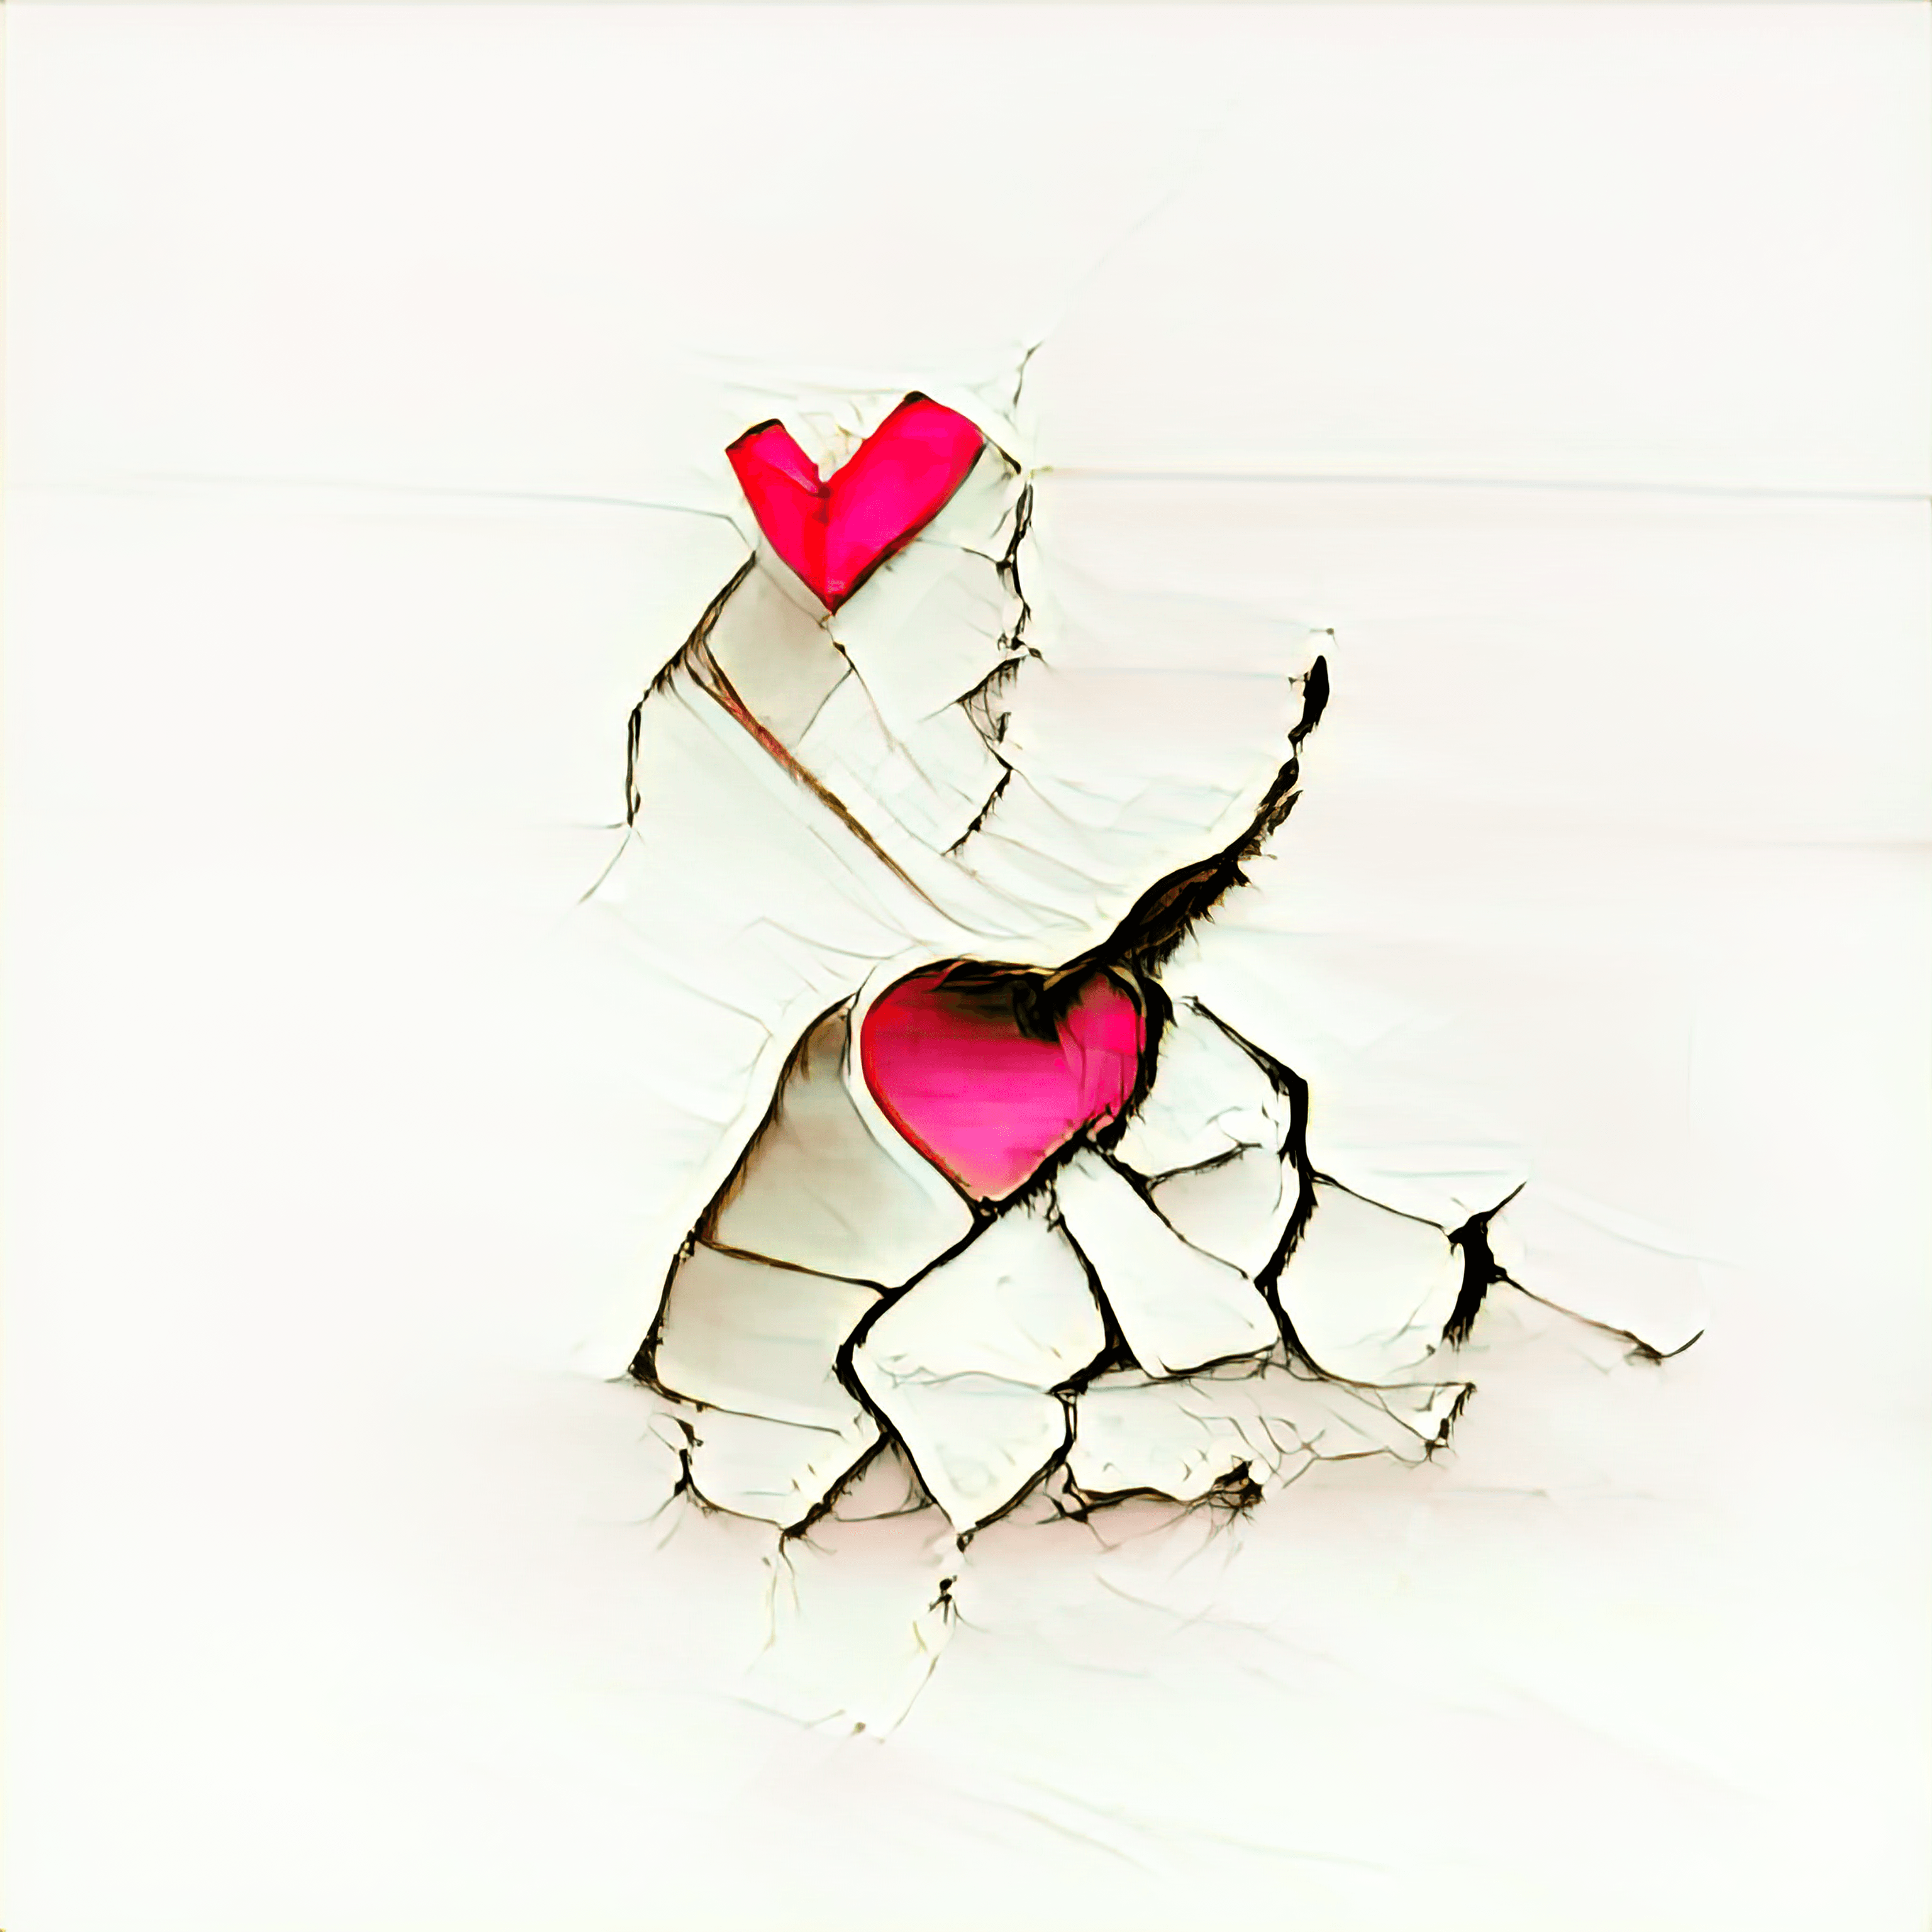 Proud of my broken heart since thou didst break it